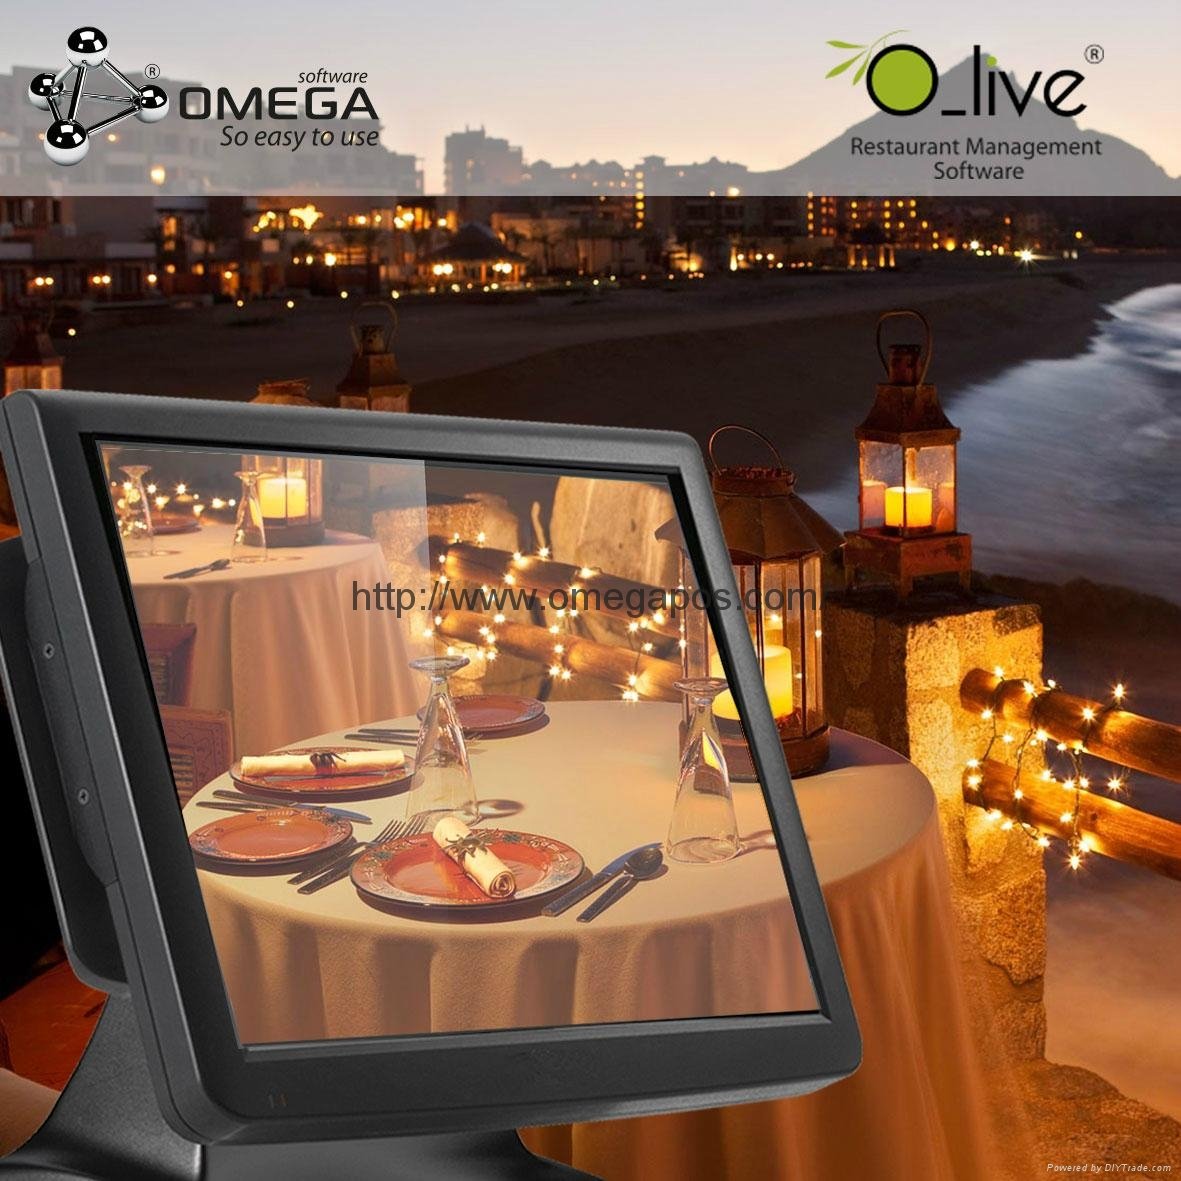 O-Live Restaurant Software